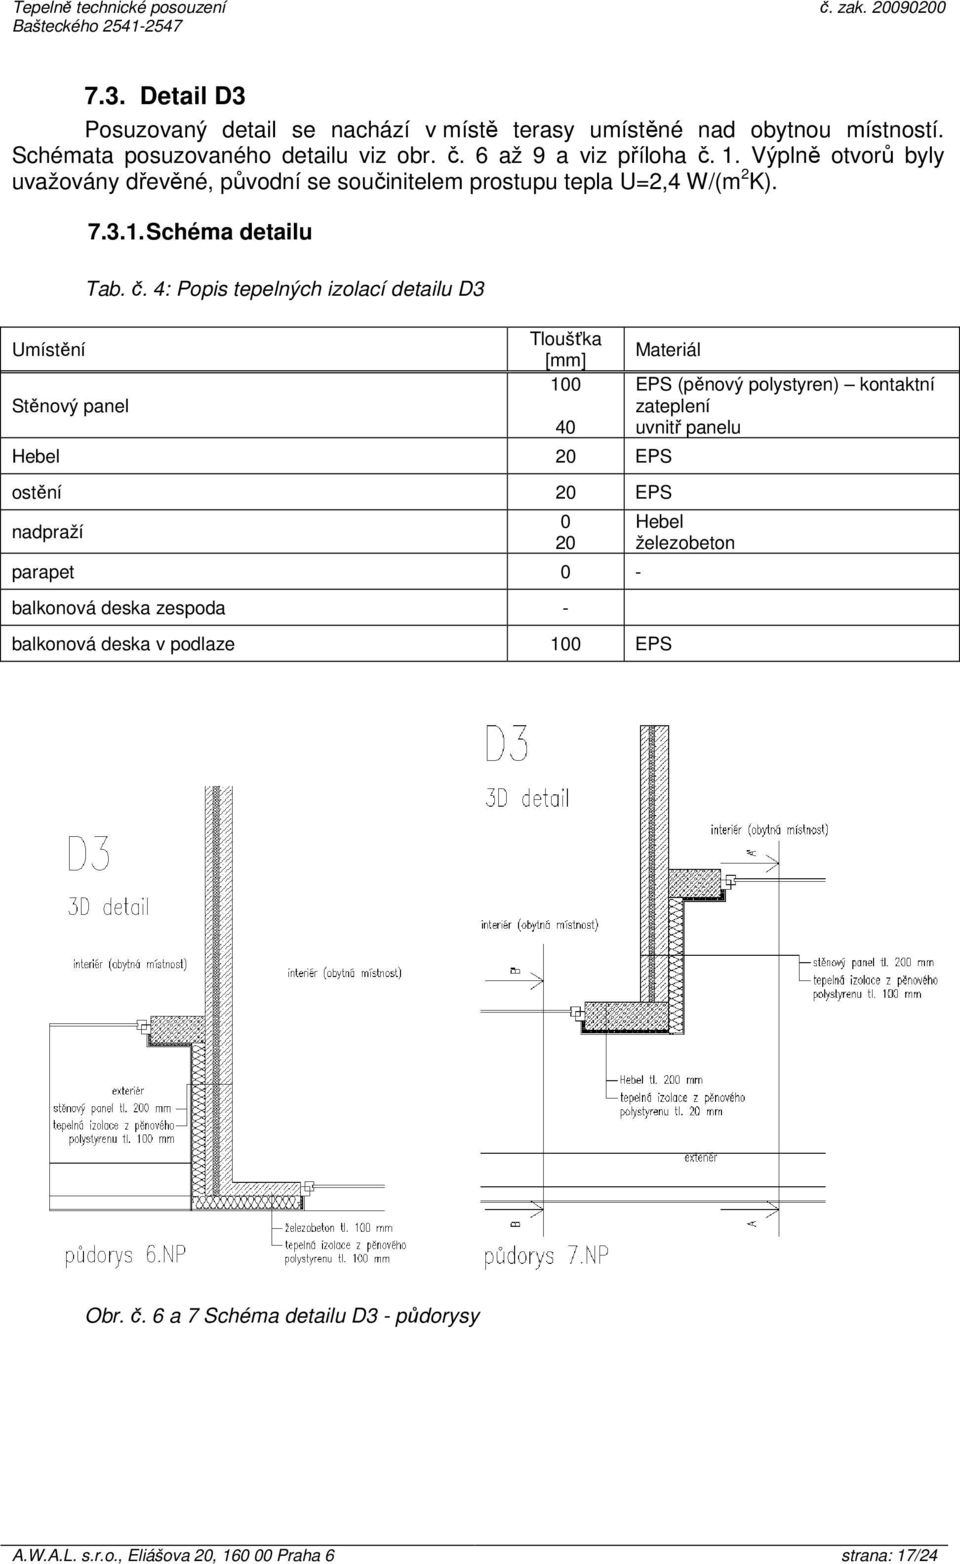 4: Popis tepelných izolací detailu D3 Tloušťka [mm] 100 Materiál Hebel 20 EPS ostění 20 EPS nadpraží parapet 0 - balkonová deska zespoda - balkonová deska v podlaze